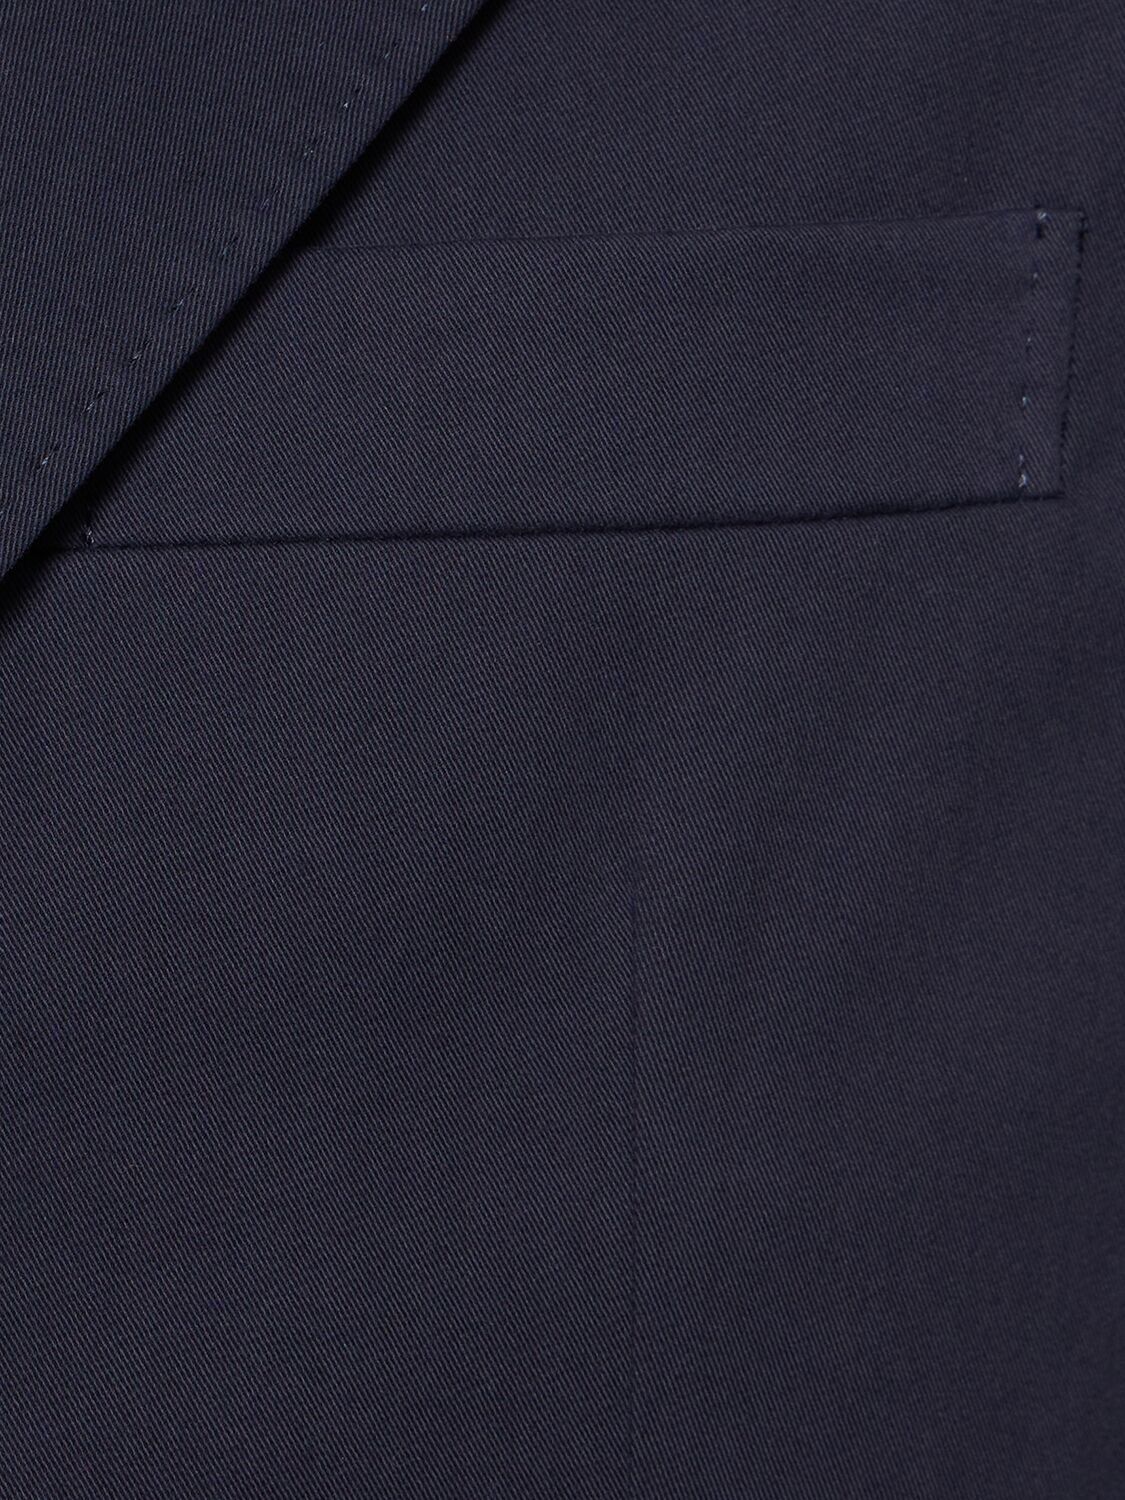 Shop Brunello Cucinelli Cotton & Wool Gabardine Suit In Navy